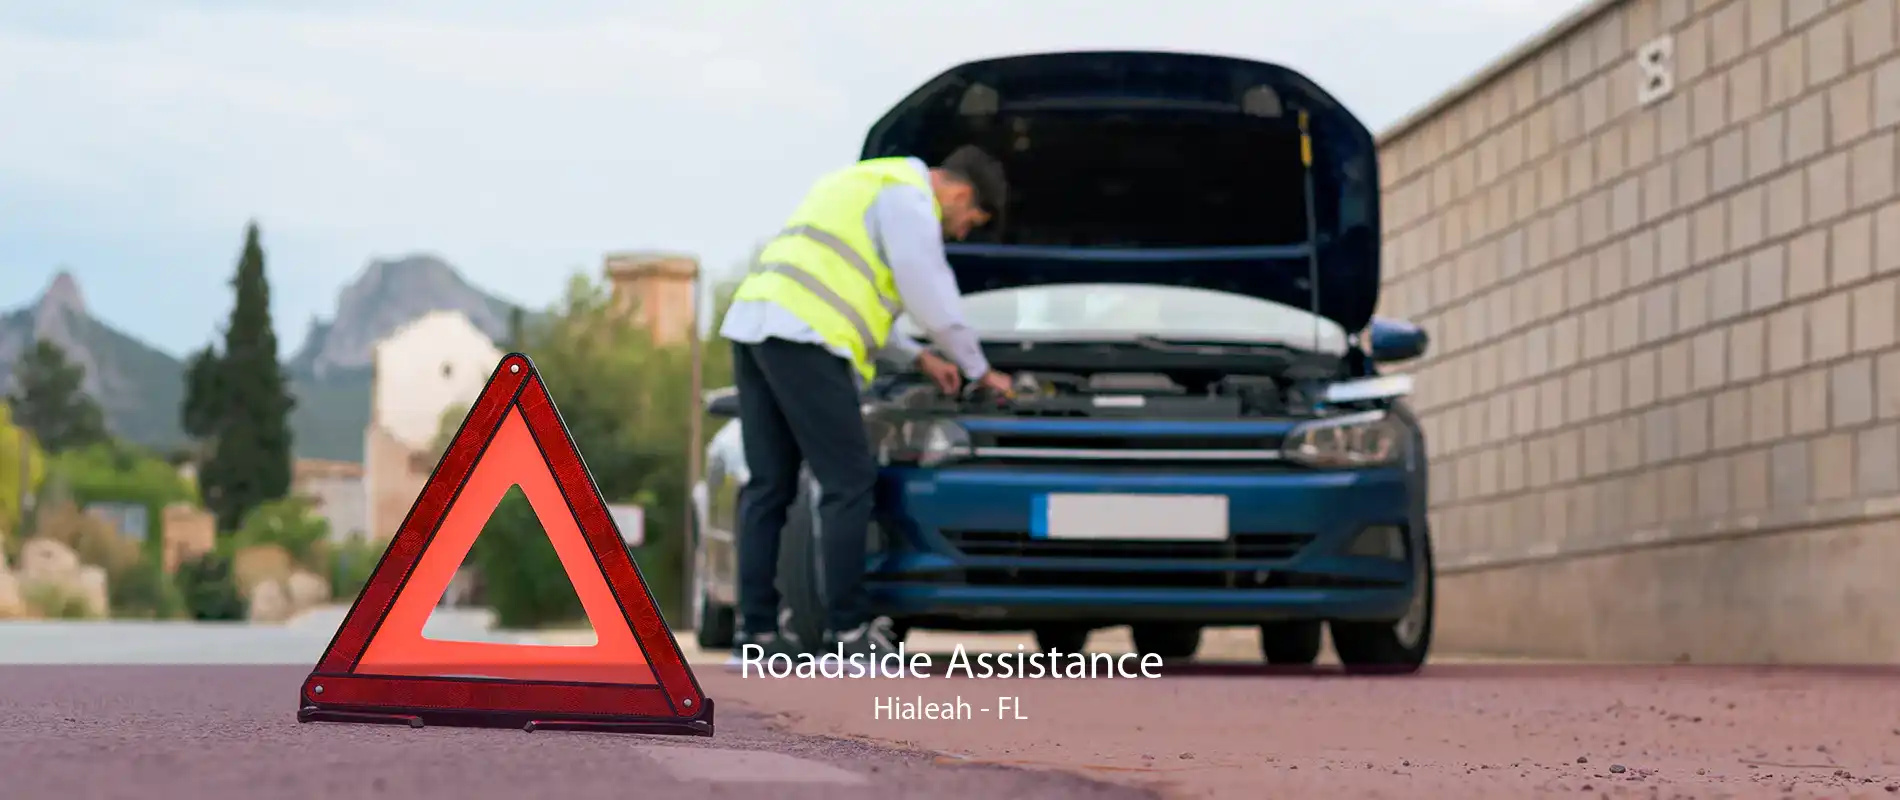 Roadside Assistance Hialeah - FL